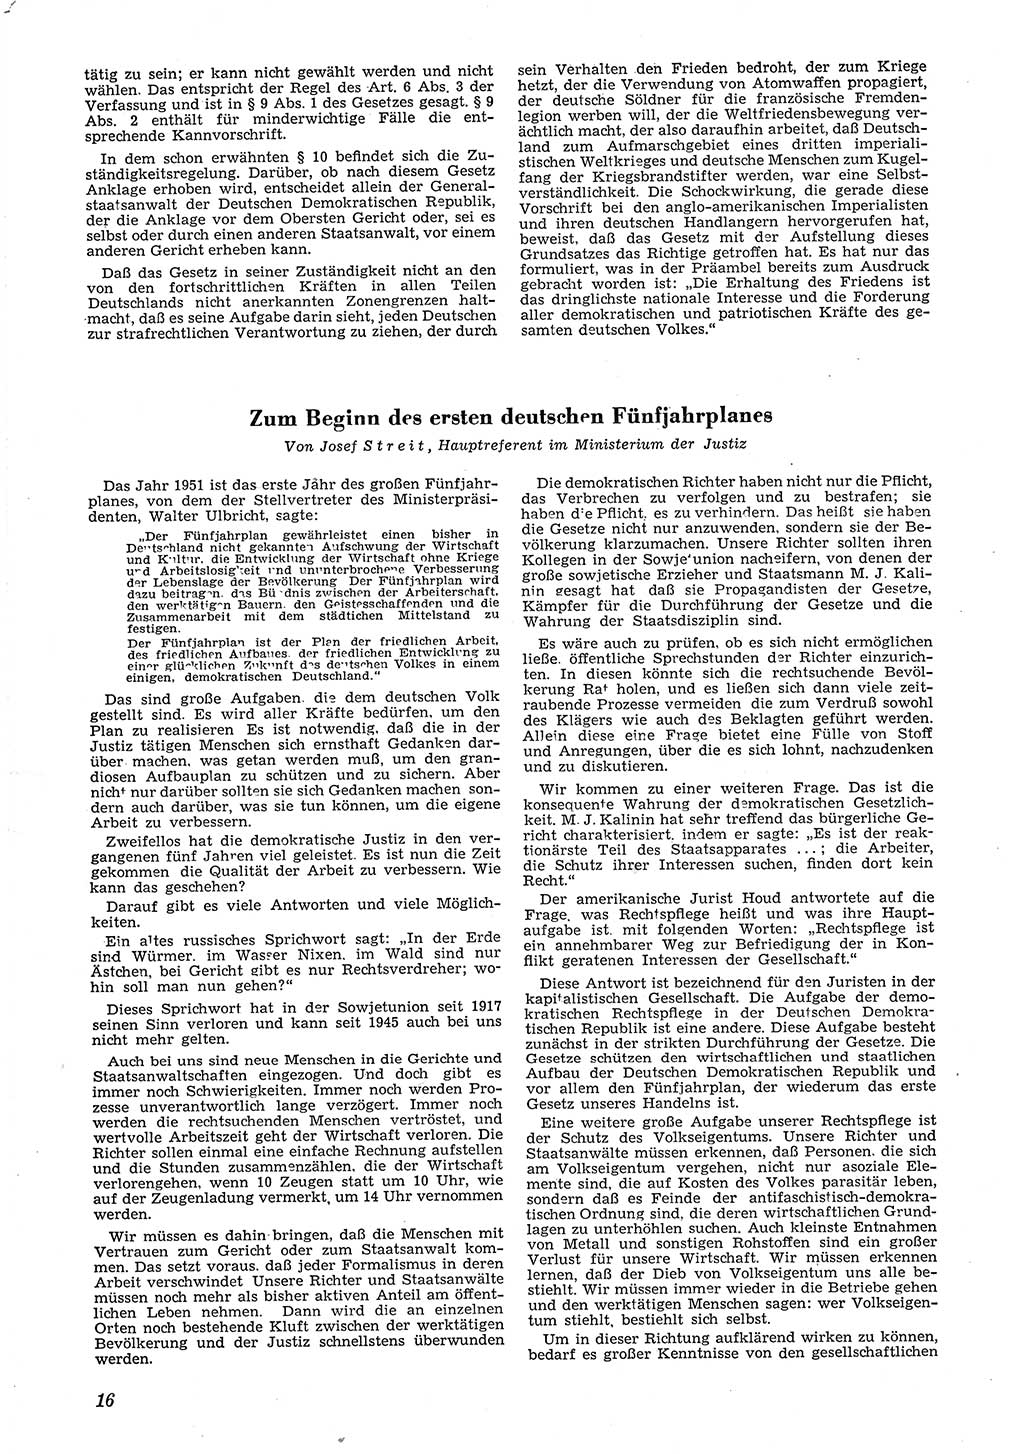 Neue Justiz (NJ), Zeitschrift für Recht und Rechtswissenschaft [Deutsche Demokratische Republik (DDR)], 5. Jahrgang 1951, Seite 16 (NJ DDR 1951, S. 16)